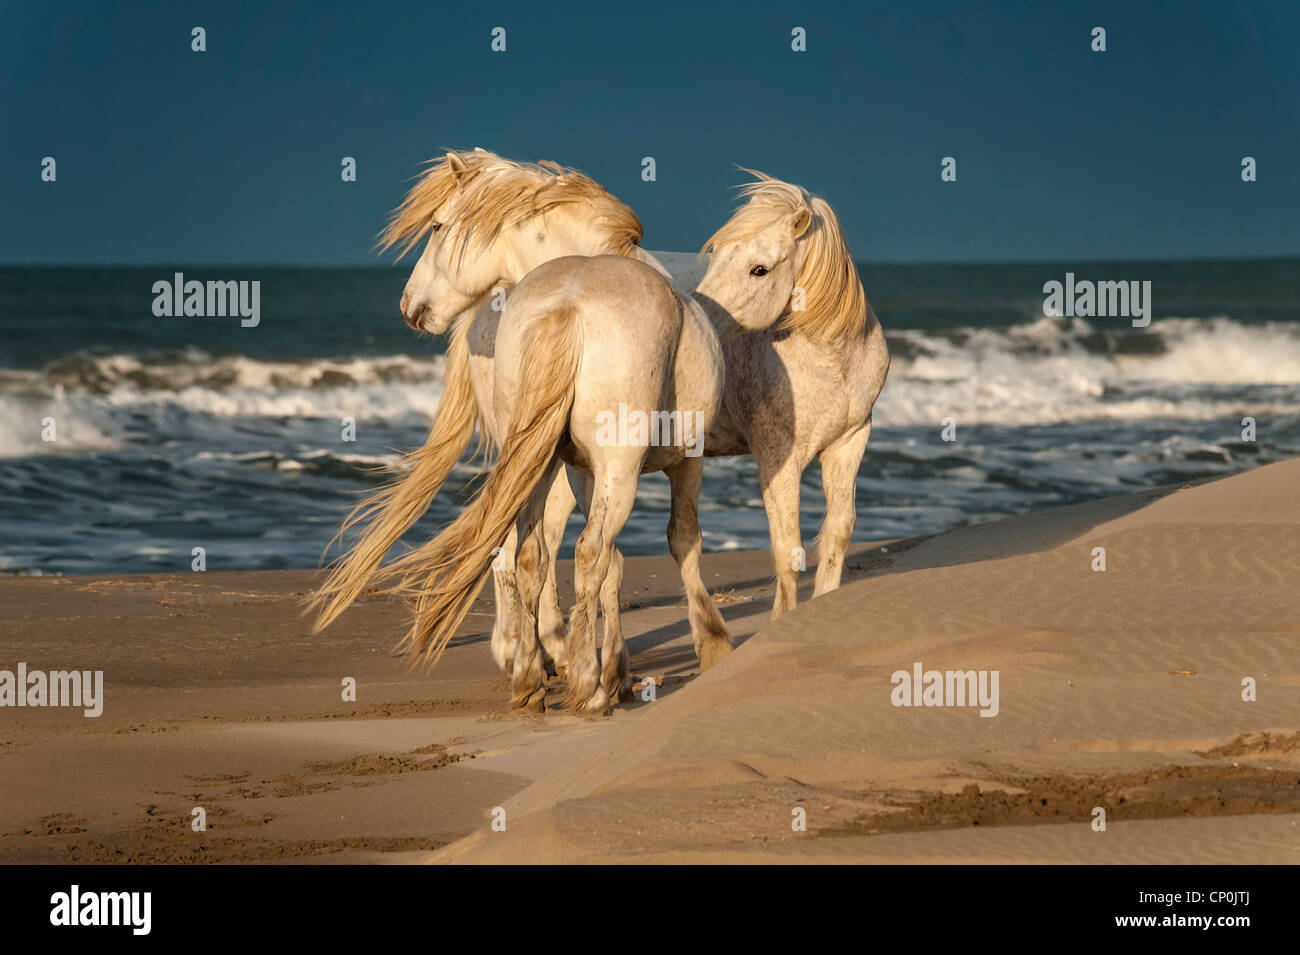 Zwei weiße Pferde auf einem sandigen Strand mit Meer im Hintergrund Stockfoto